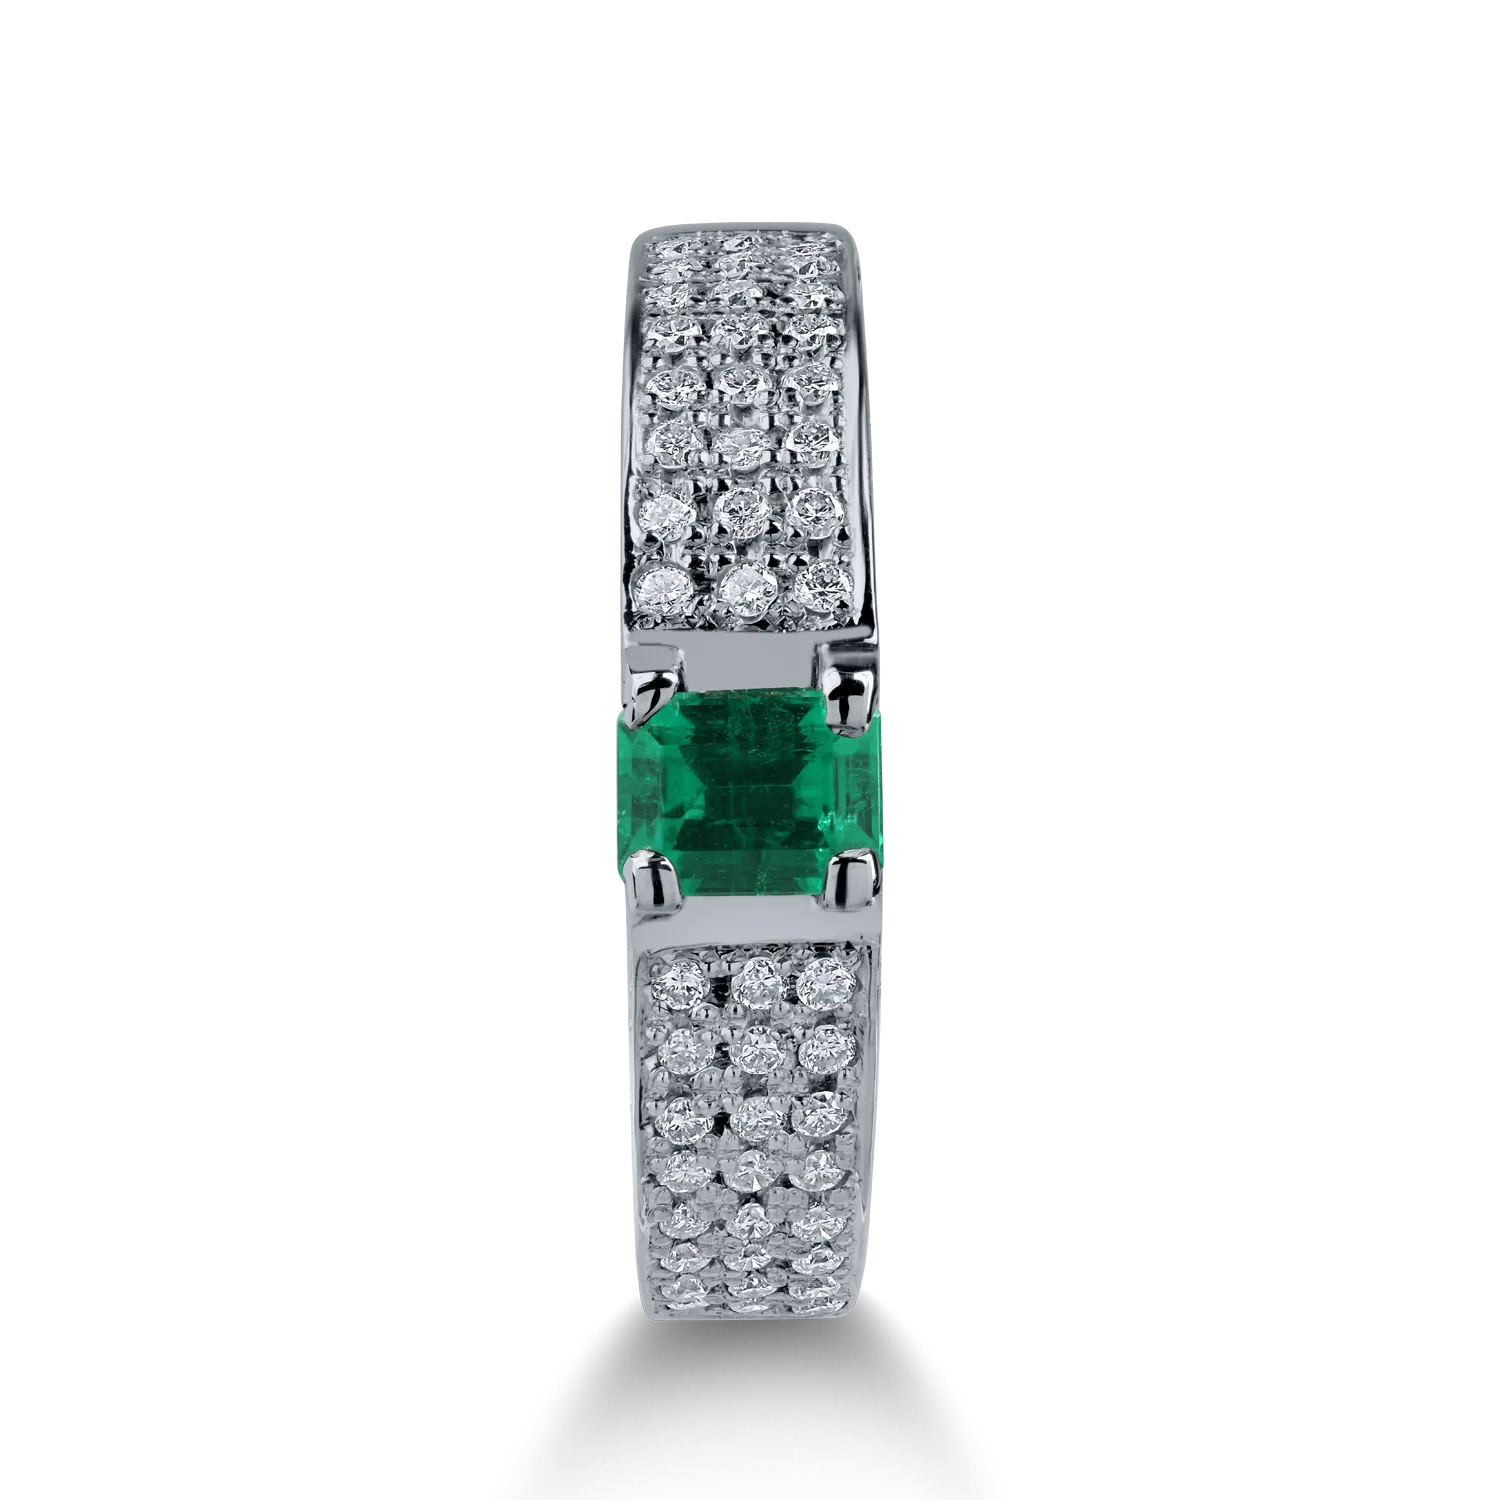 Fehérarany gyűrű 0.415ct smaragddal és 0.51ct gyémántokkal